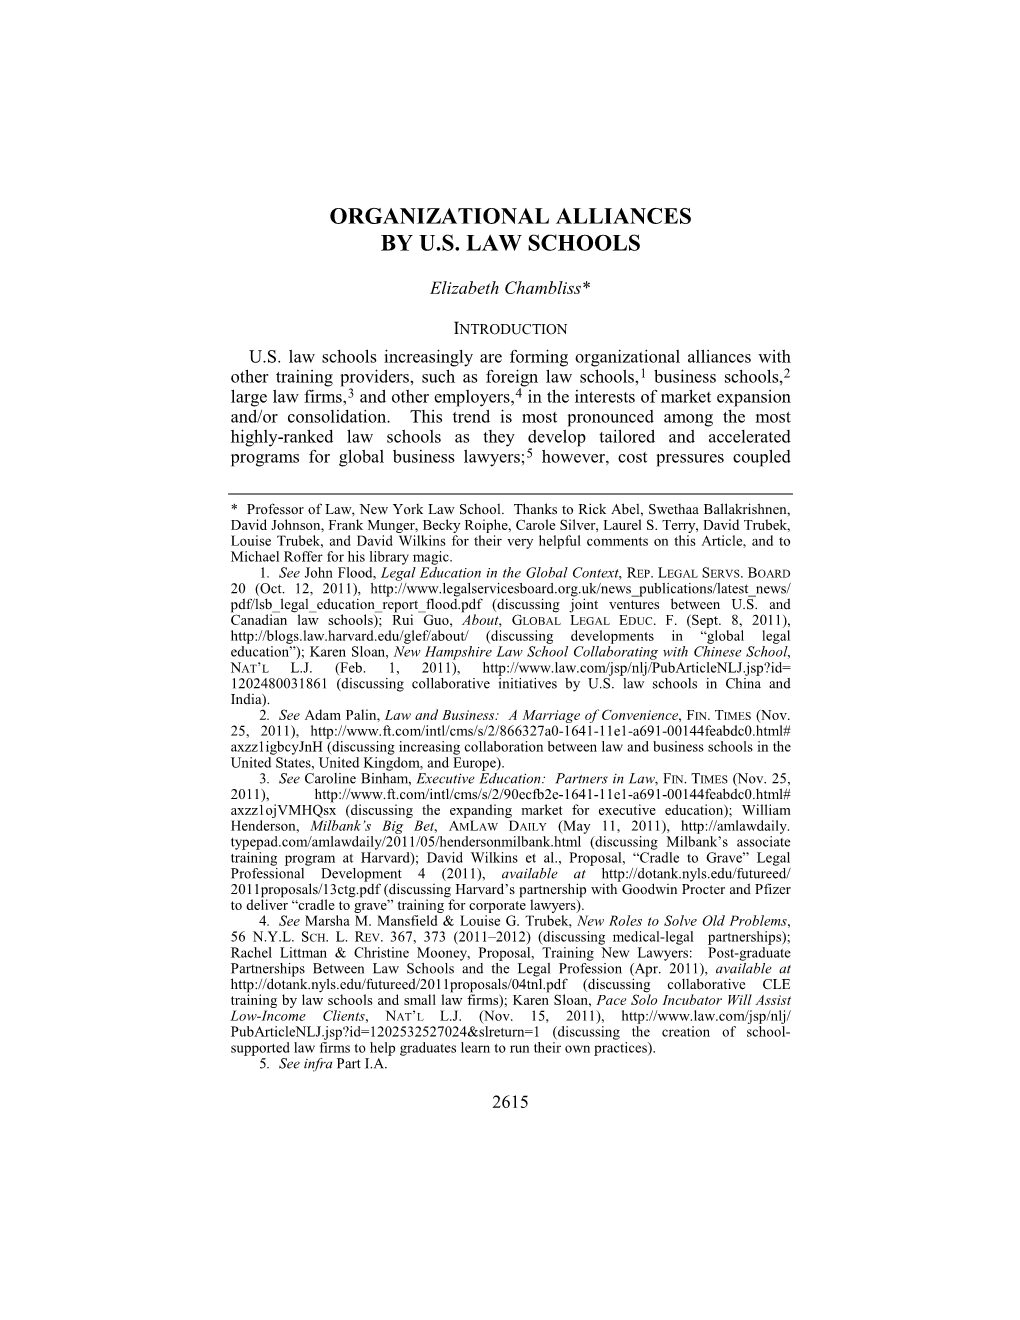 Organizational Alliances by U.S. Law Schools